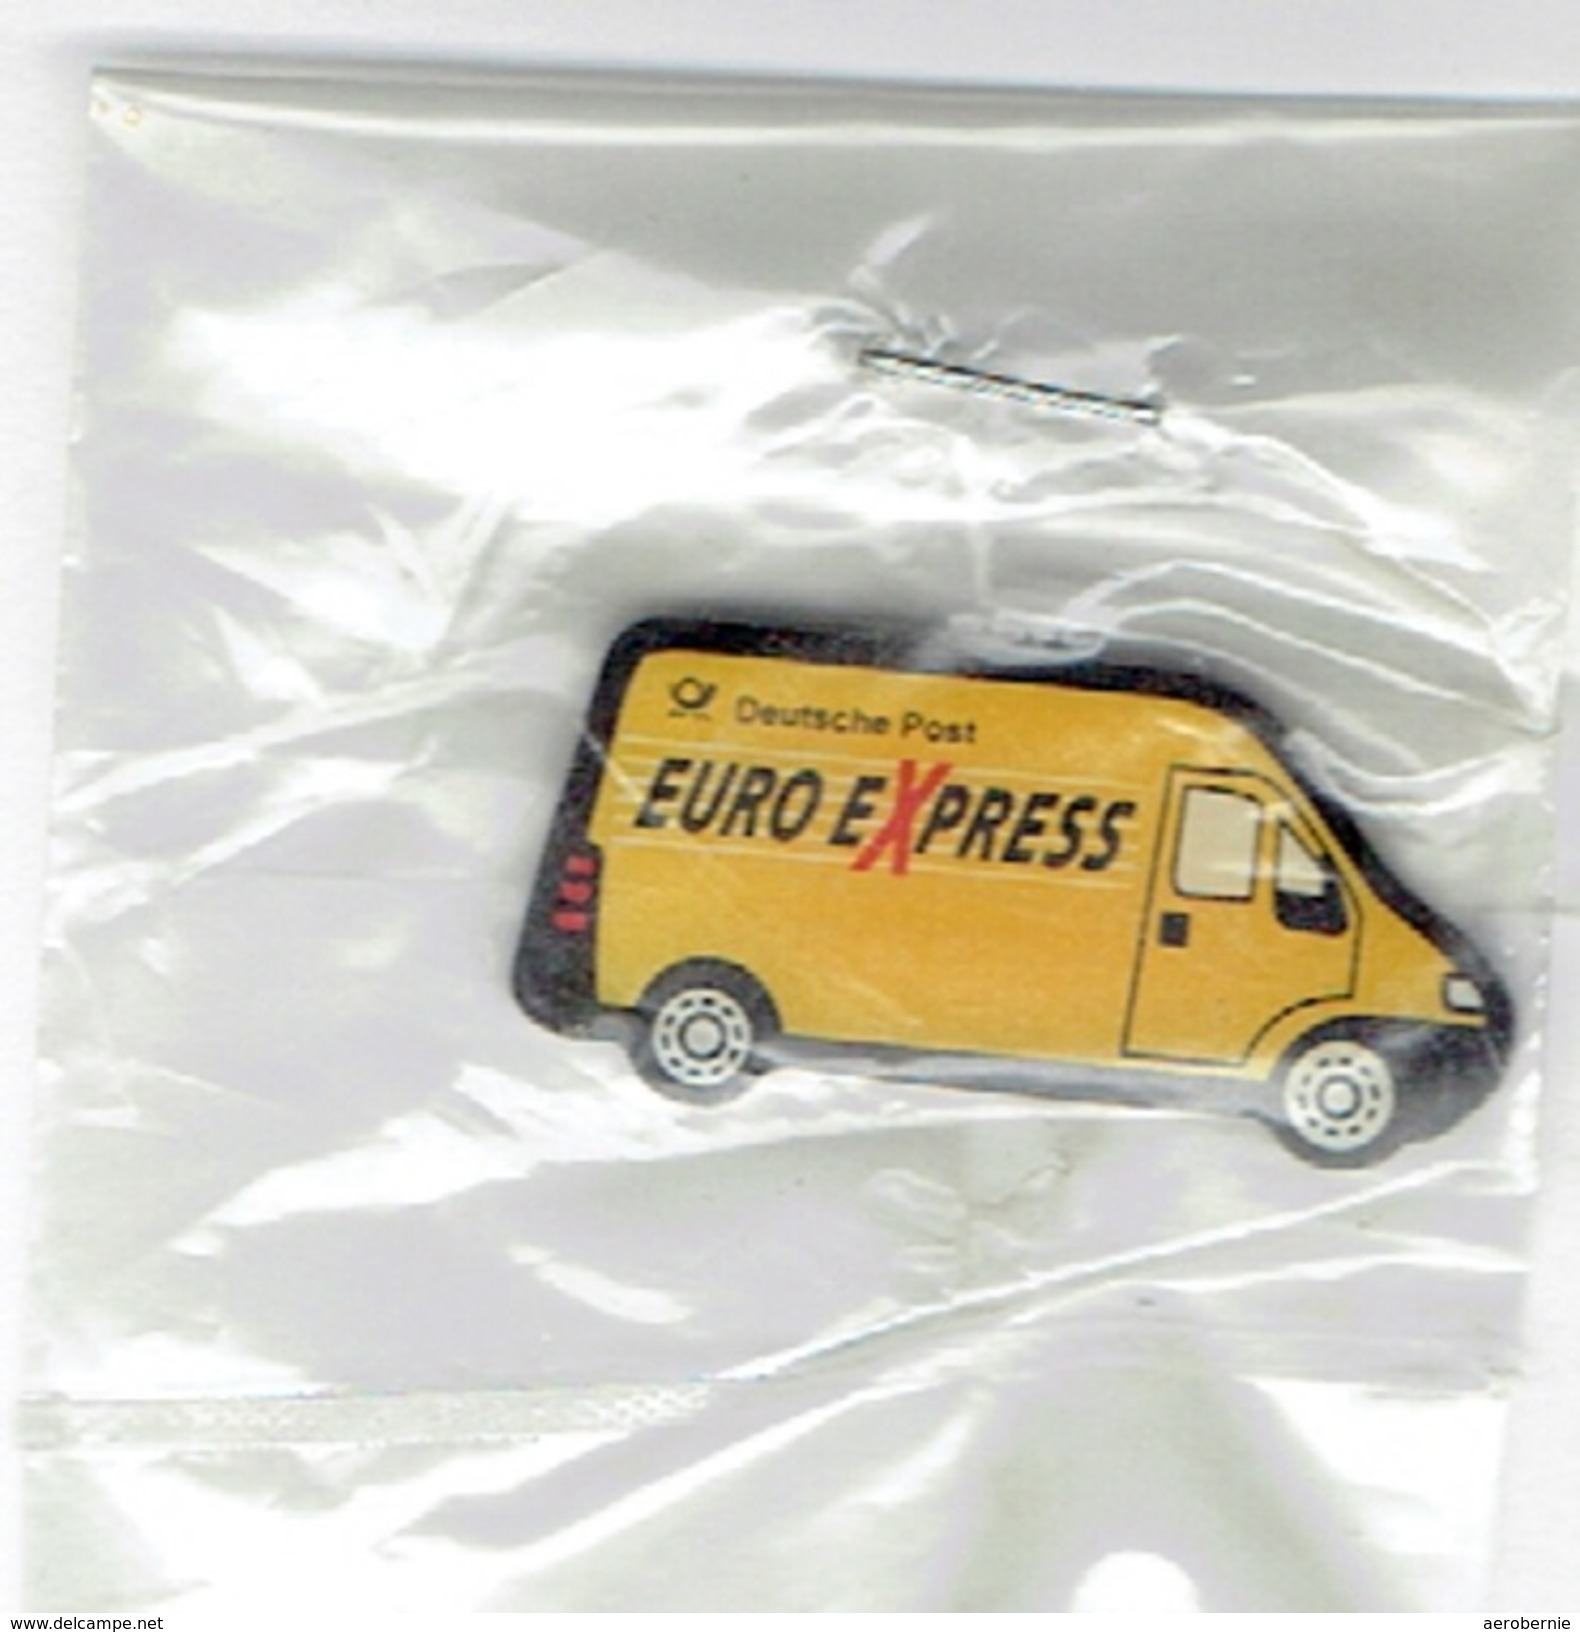 Pin Transporter Der Deutsche Post / Euro Express - Postwesen